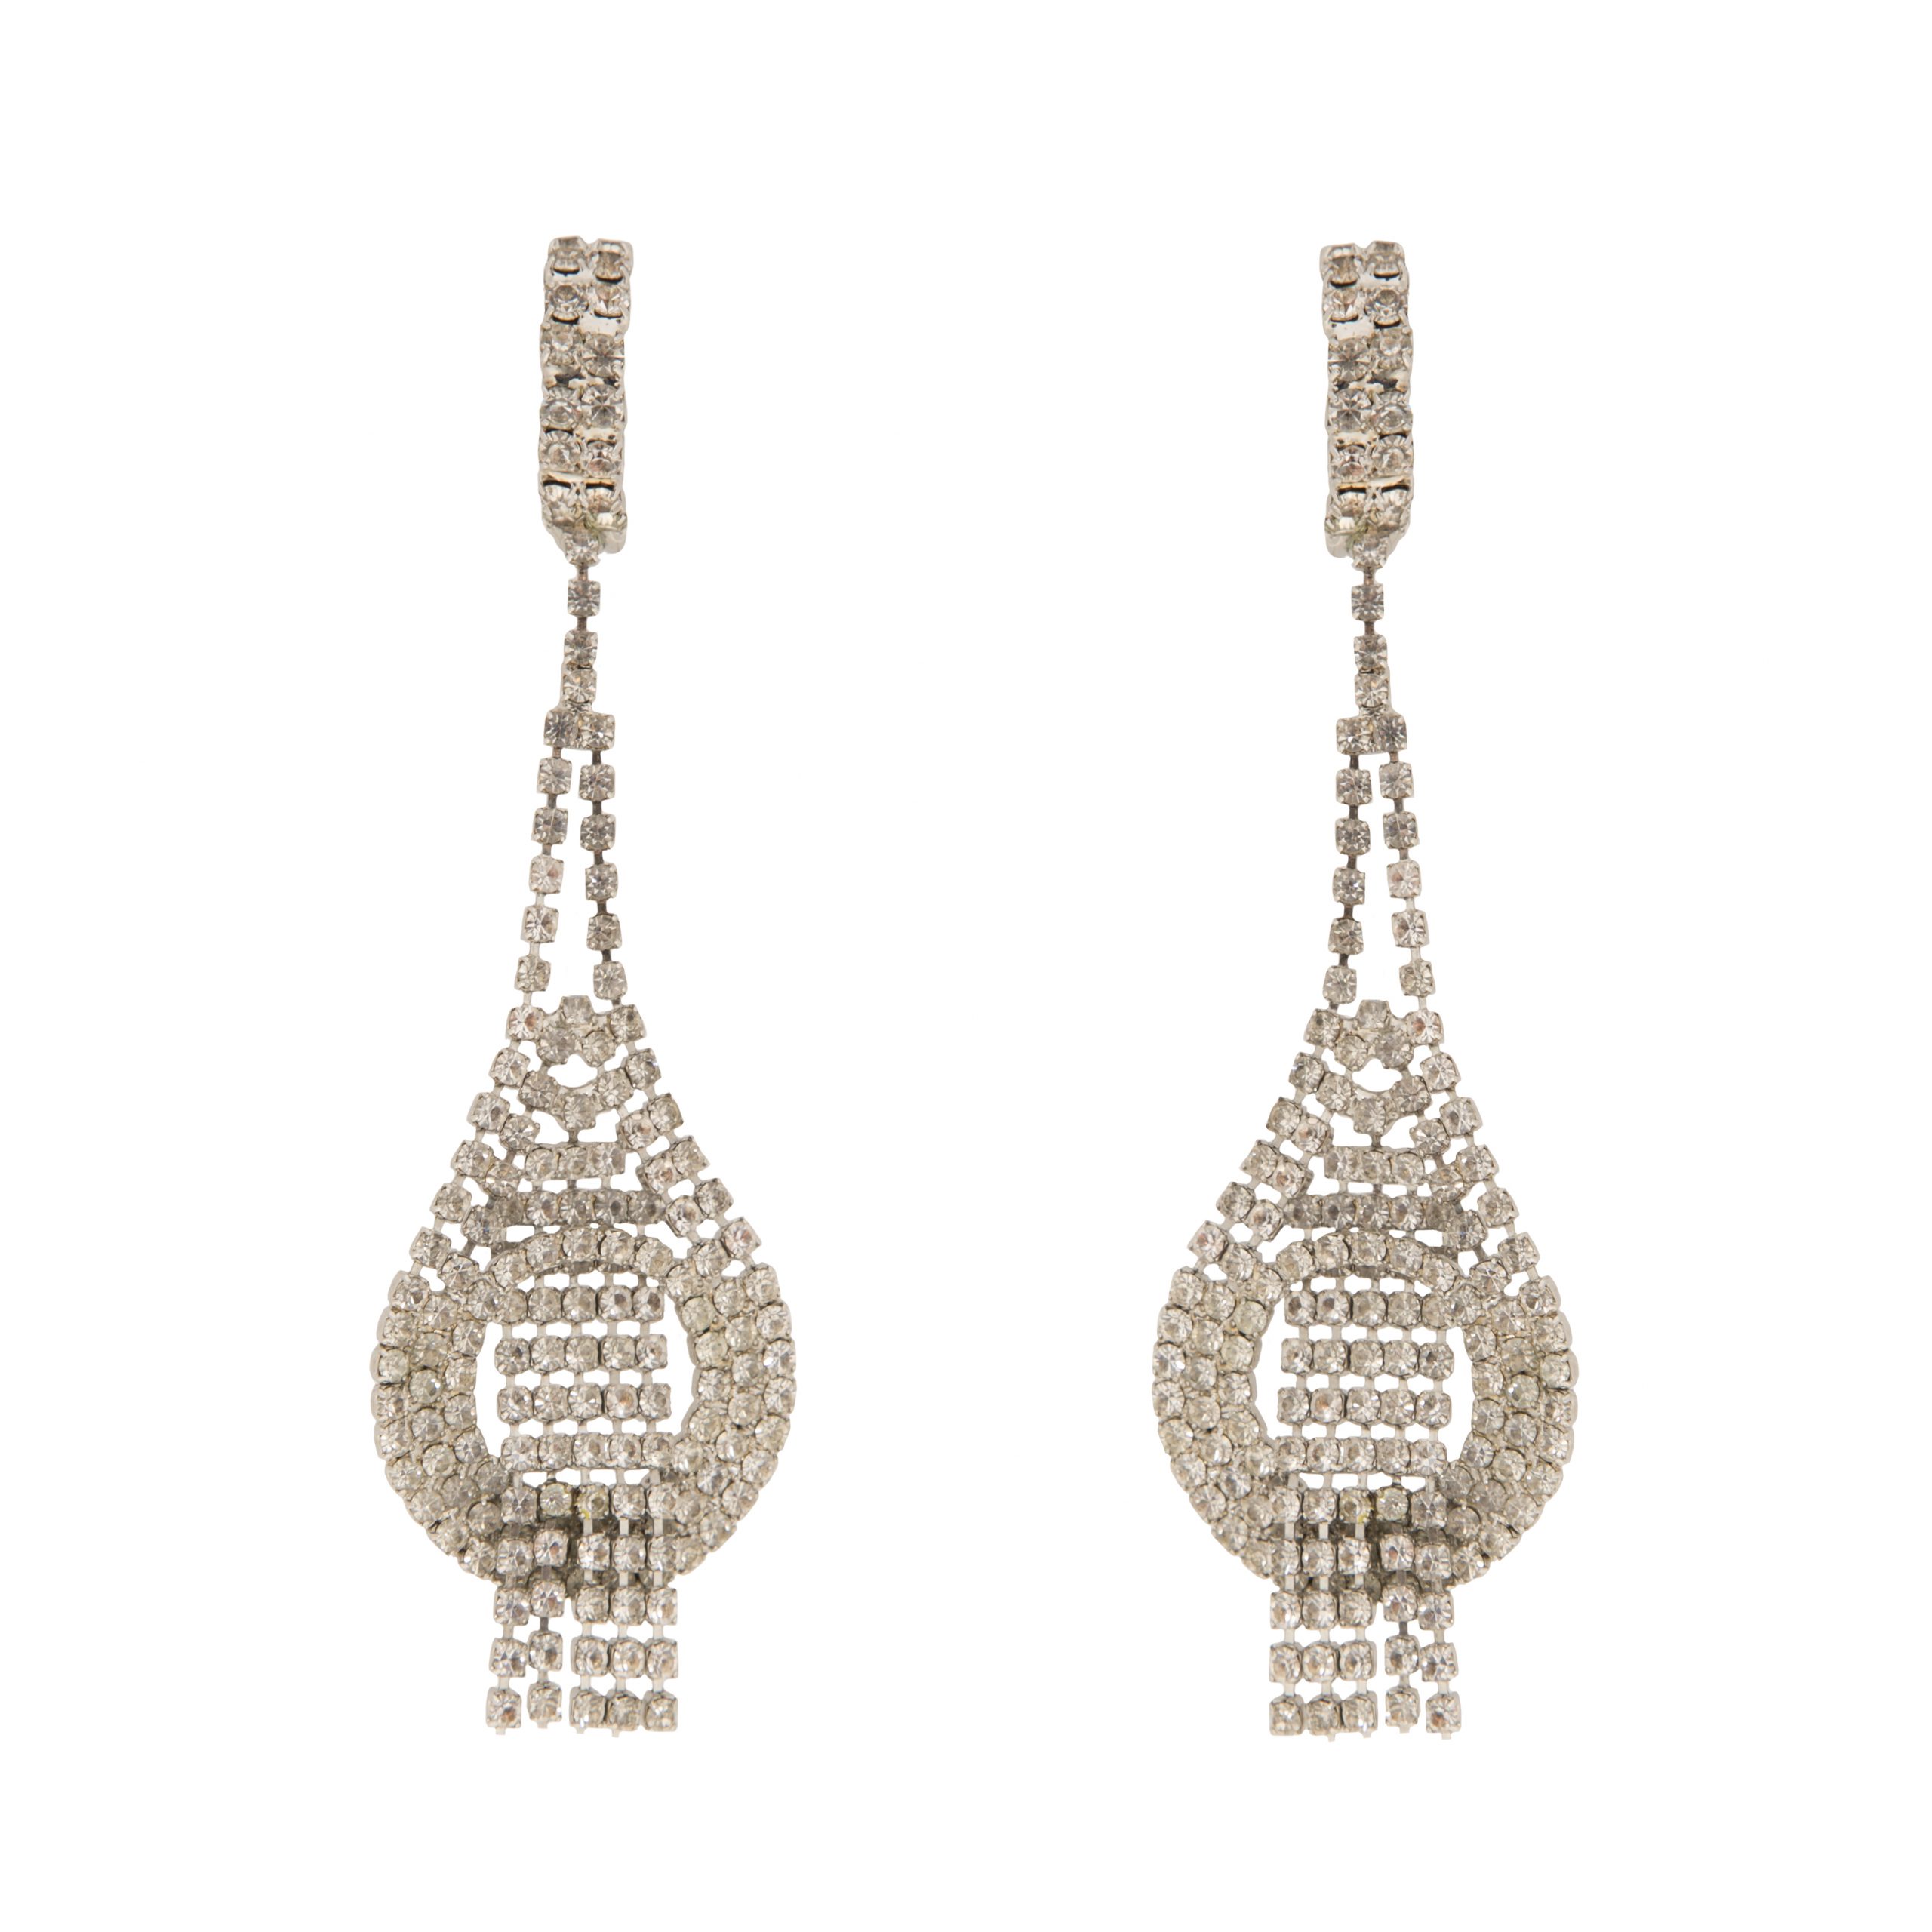 Vintage crystal chandelier earrings